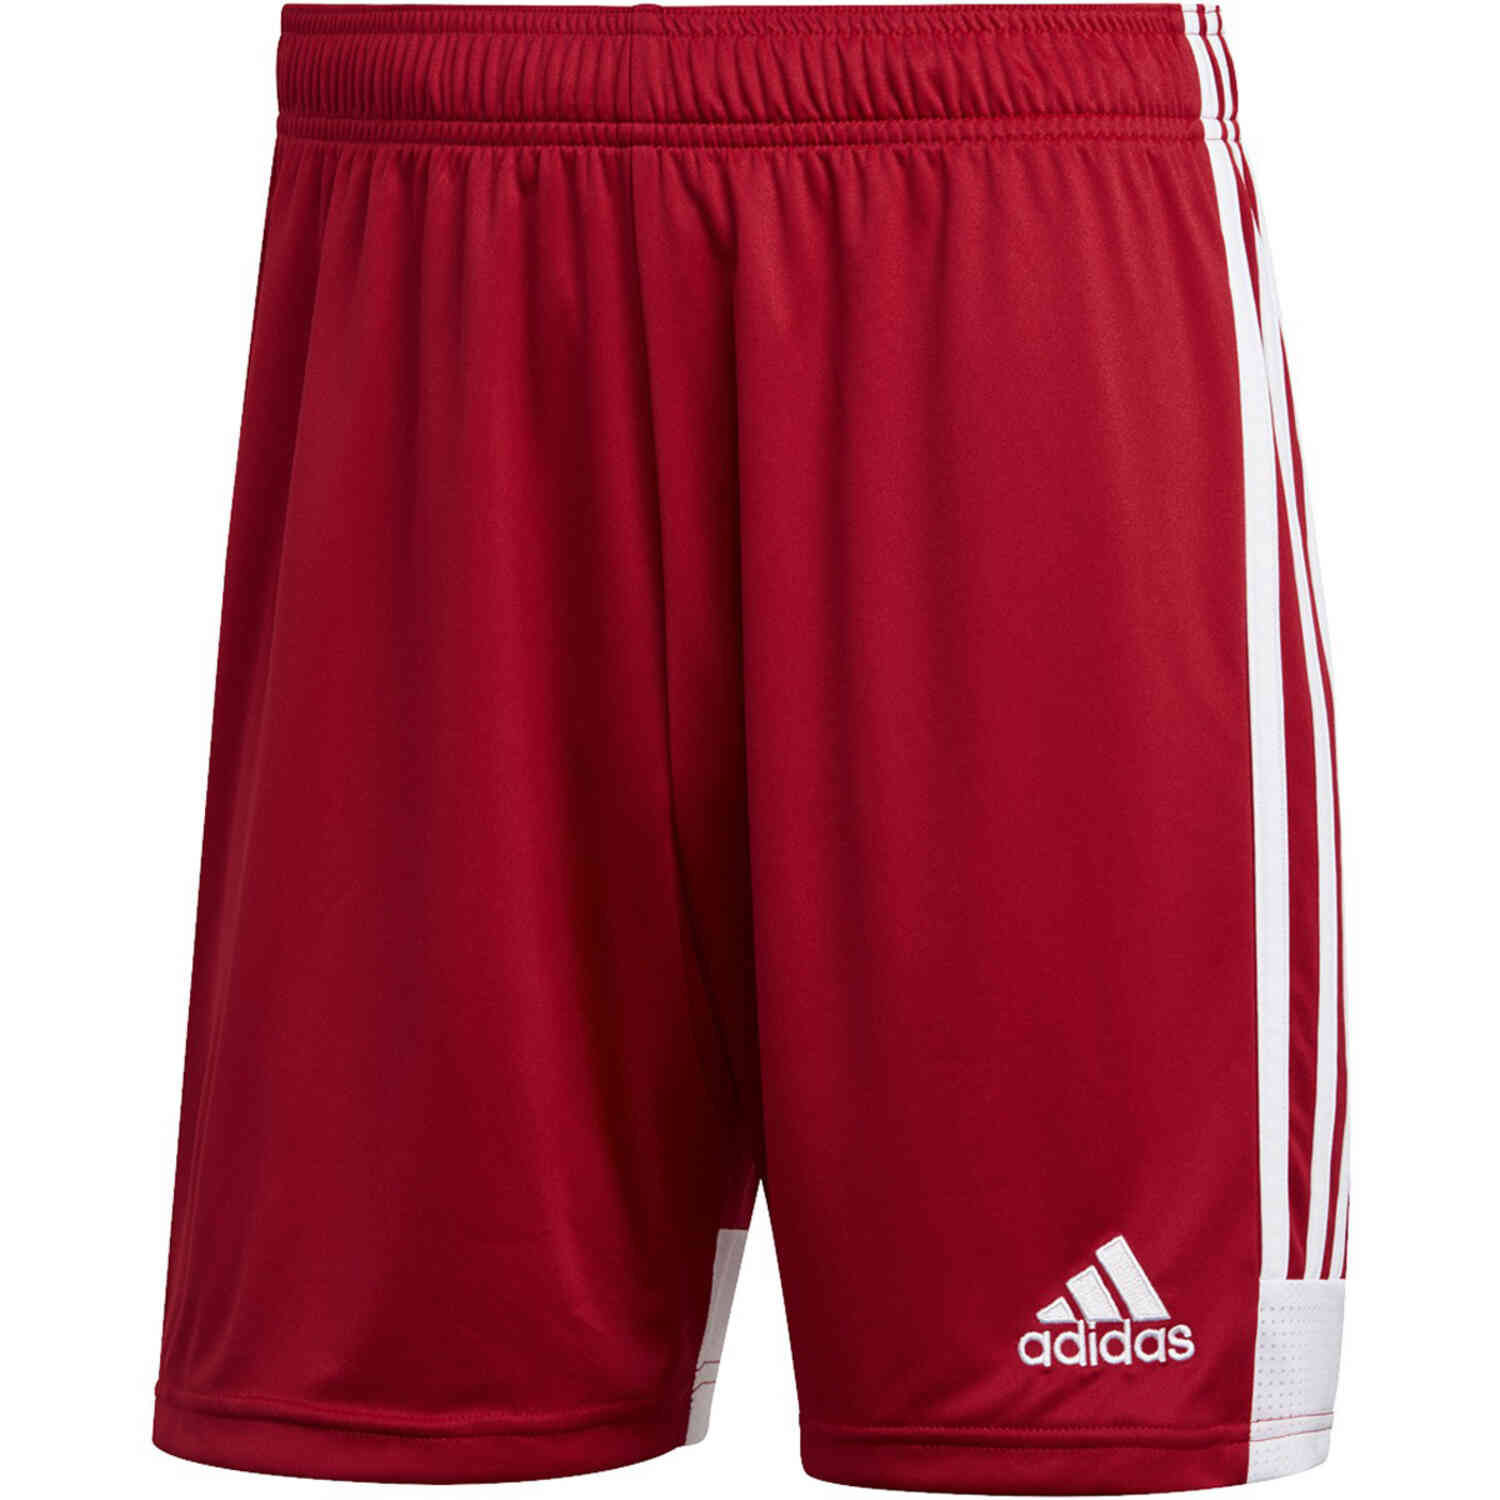 adidas Tastigo 19 Shorts - Power Red - SoccerPro